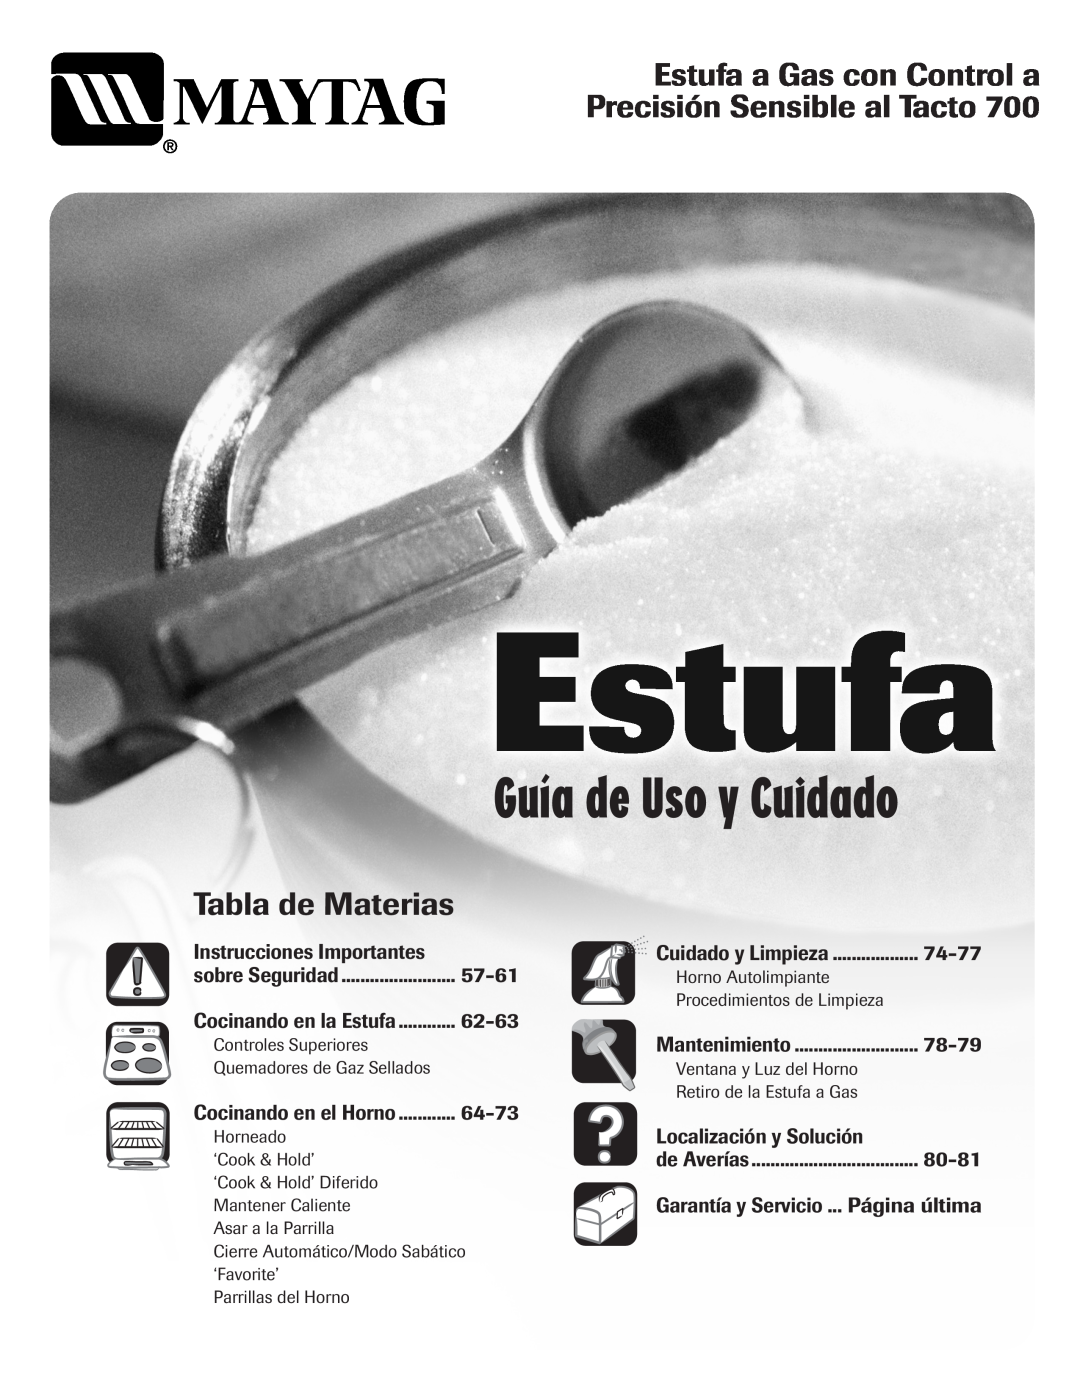 Maytag 700 Guía de Uso y Cuidado, Estufa a Gas con Control a Precisión Sensible al Tacto, Tabla de Materias, 57-61, 62-63 